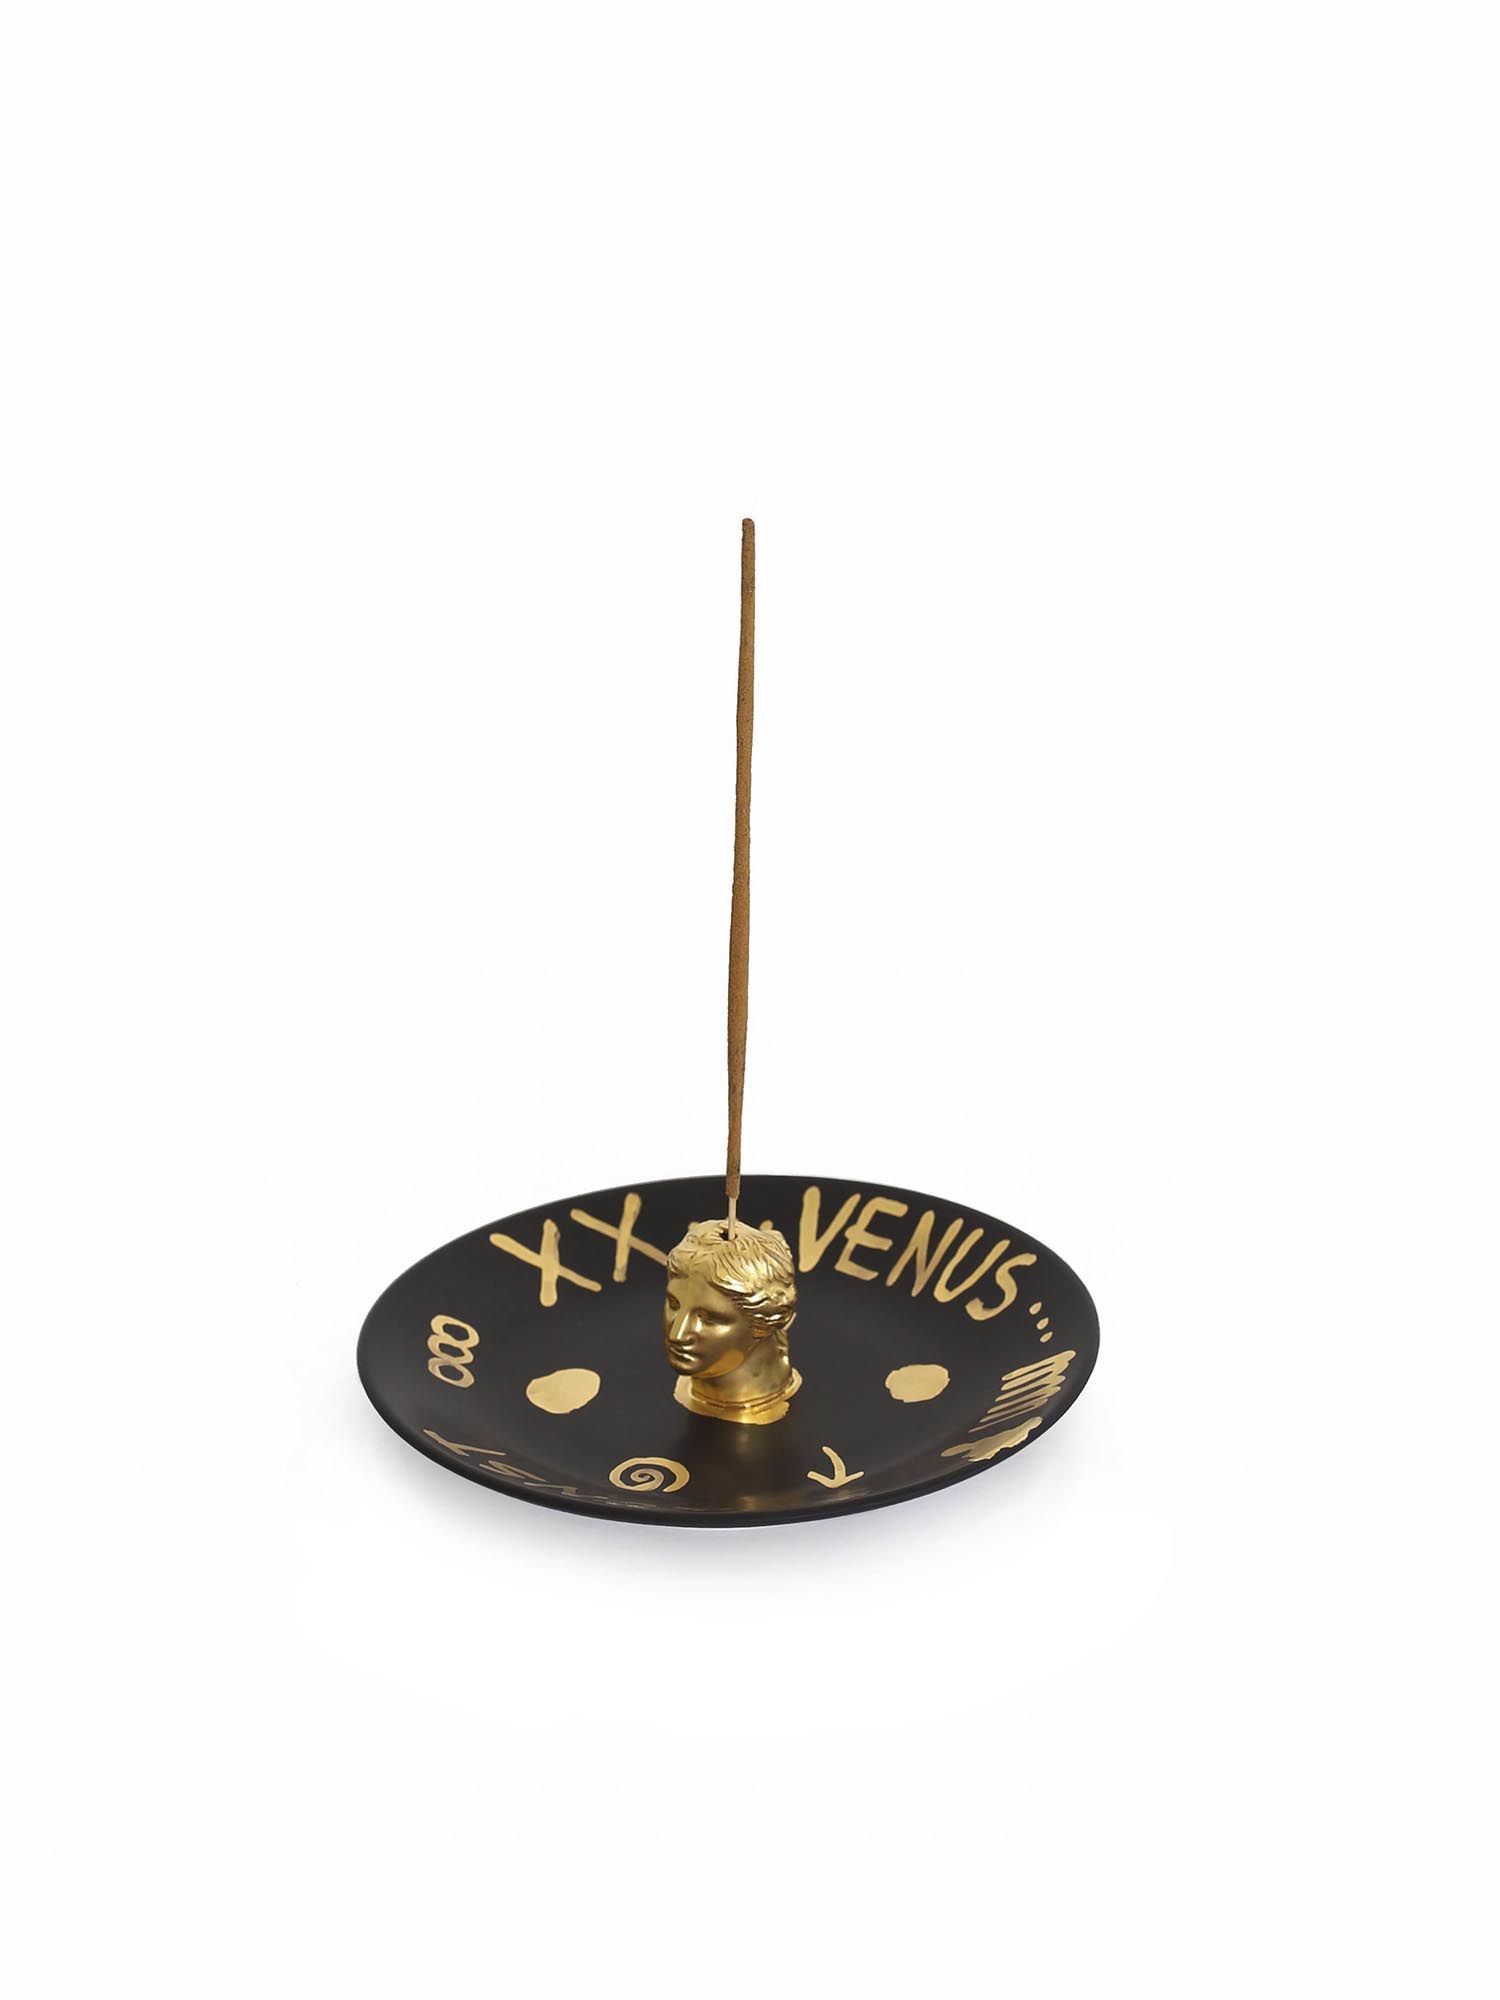 Venus Incense Holder - Black Gold Edition